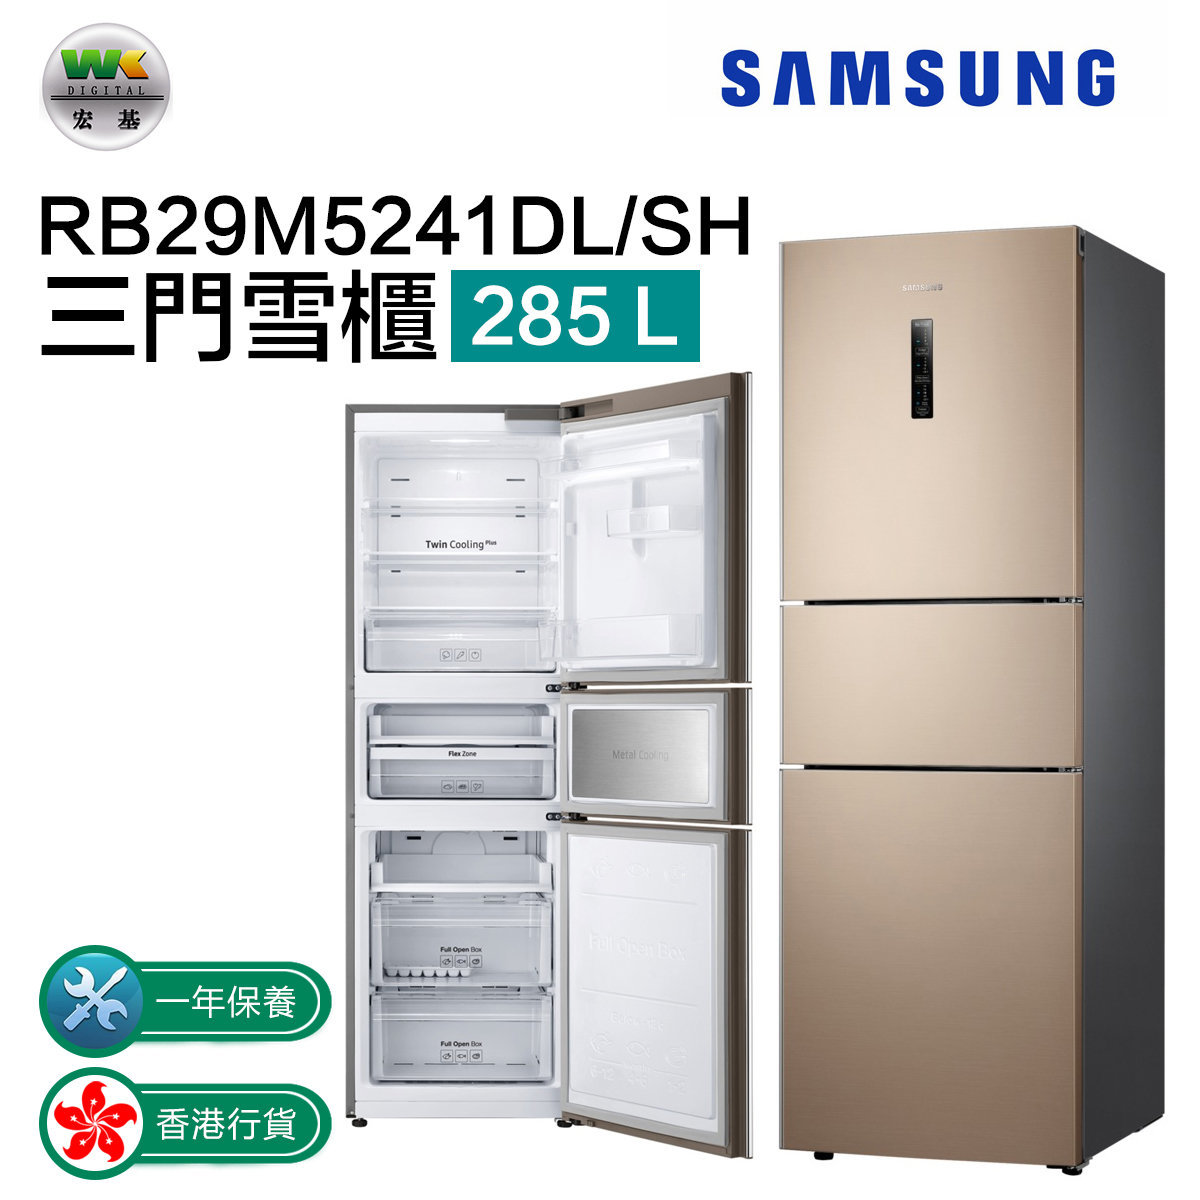 RB29M5241DL/SH three-door refrigerator 285L